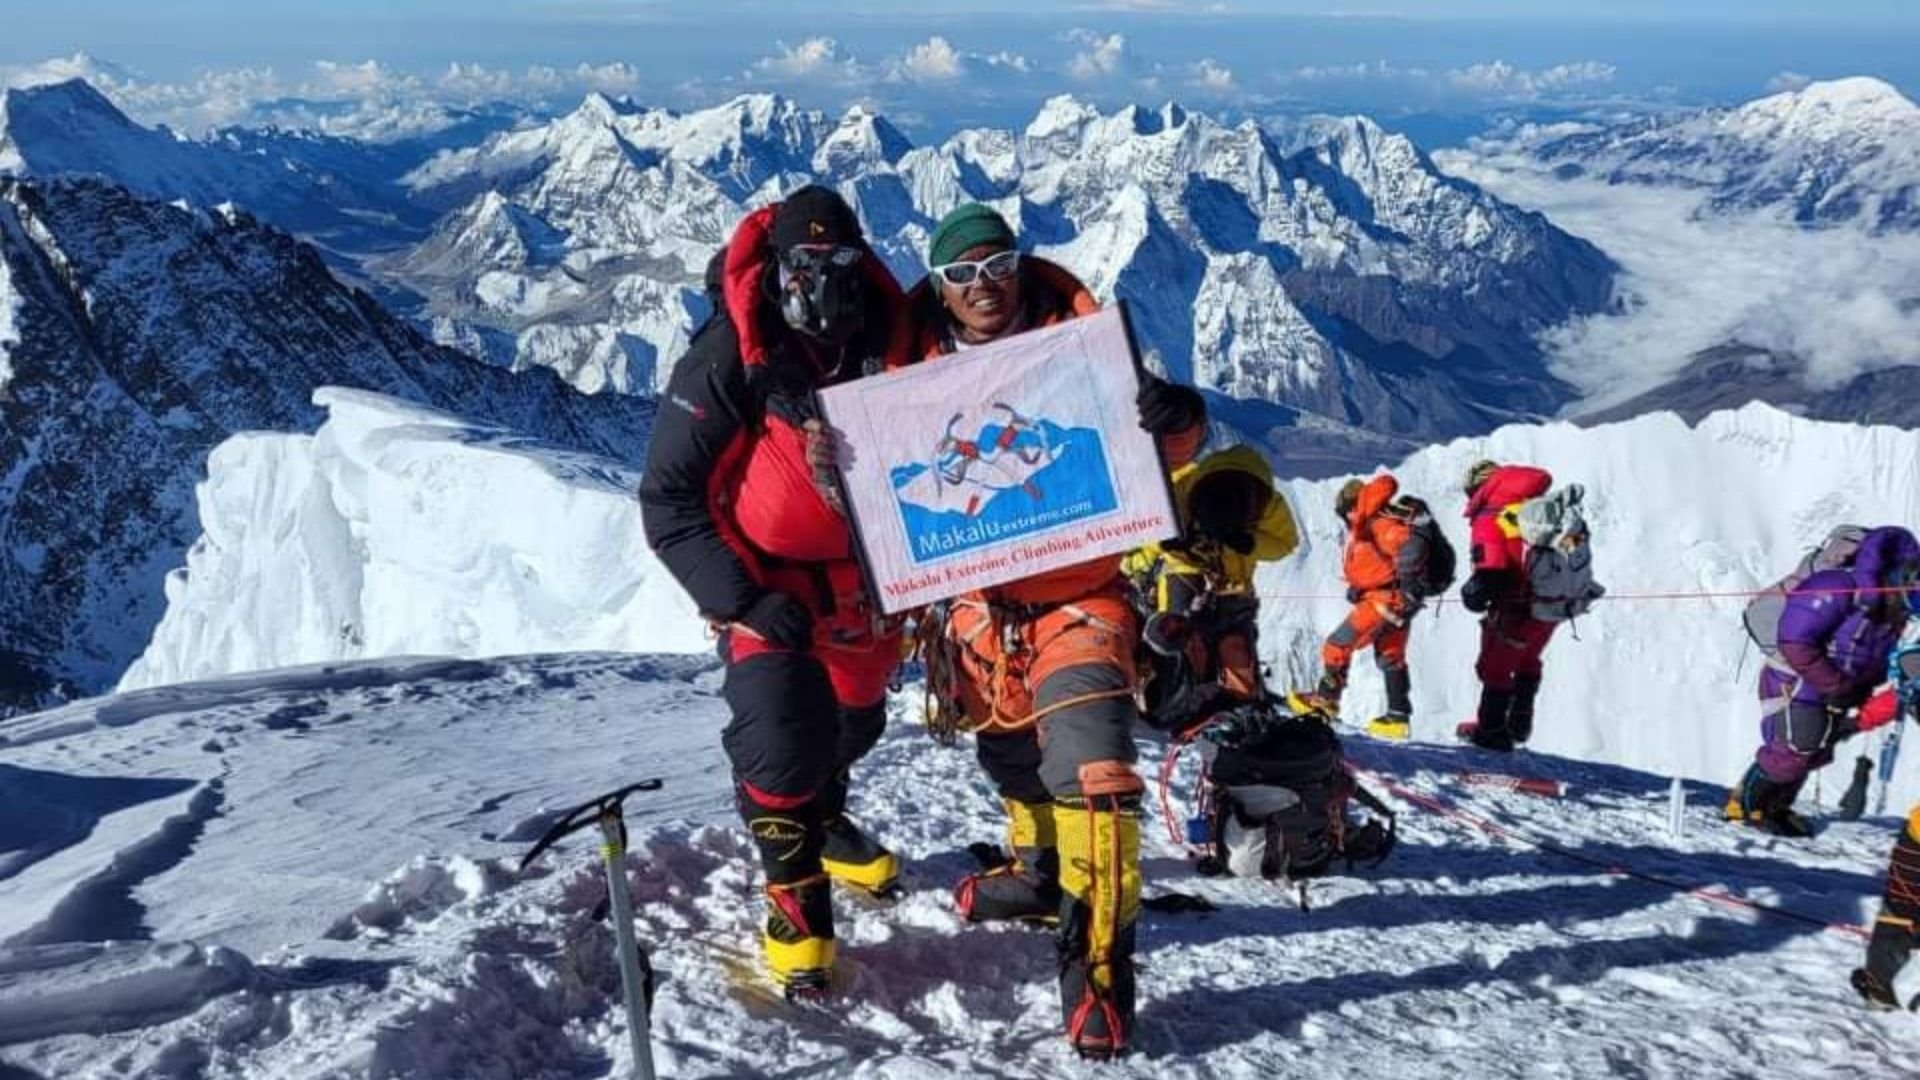 Самая высокая гора в мире Эверест